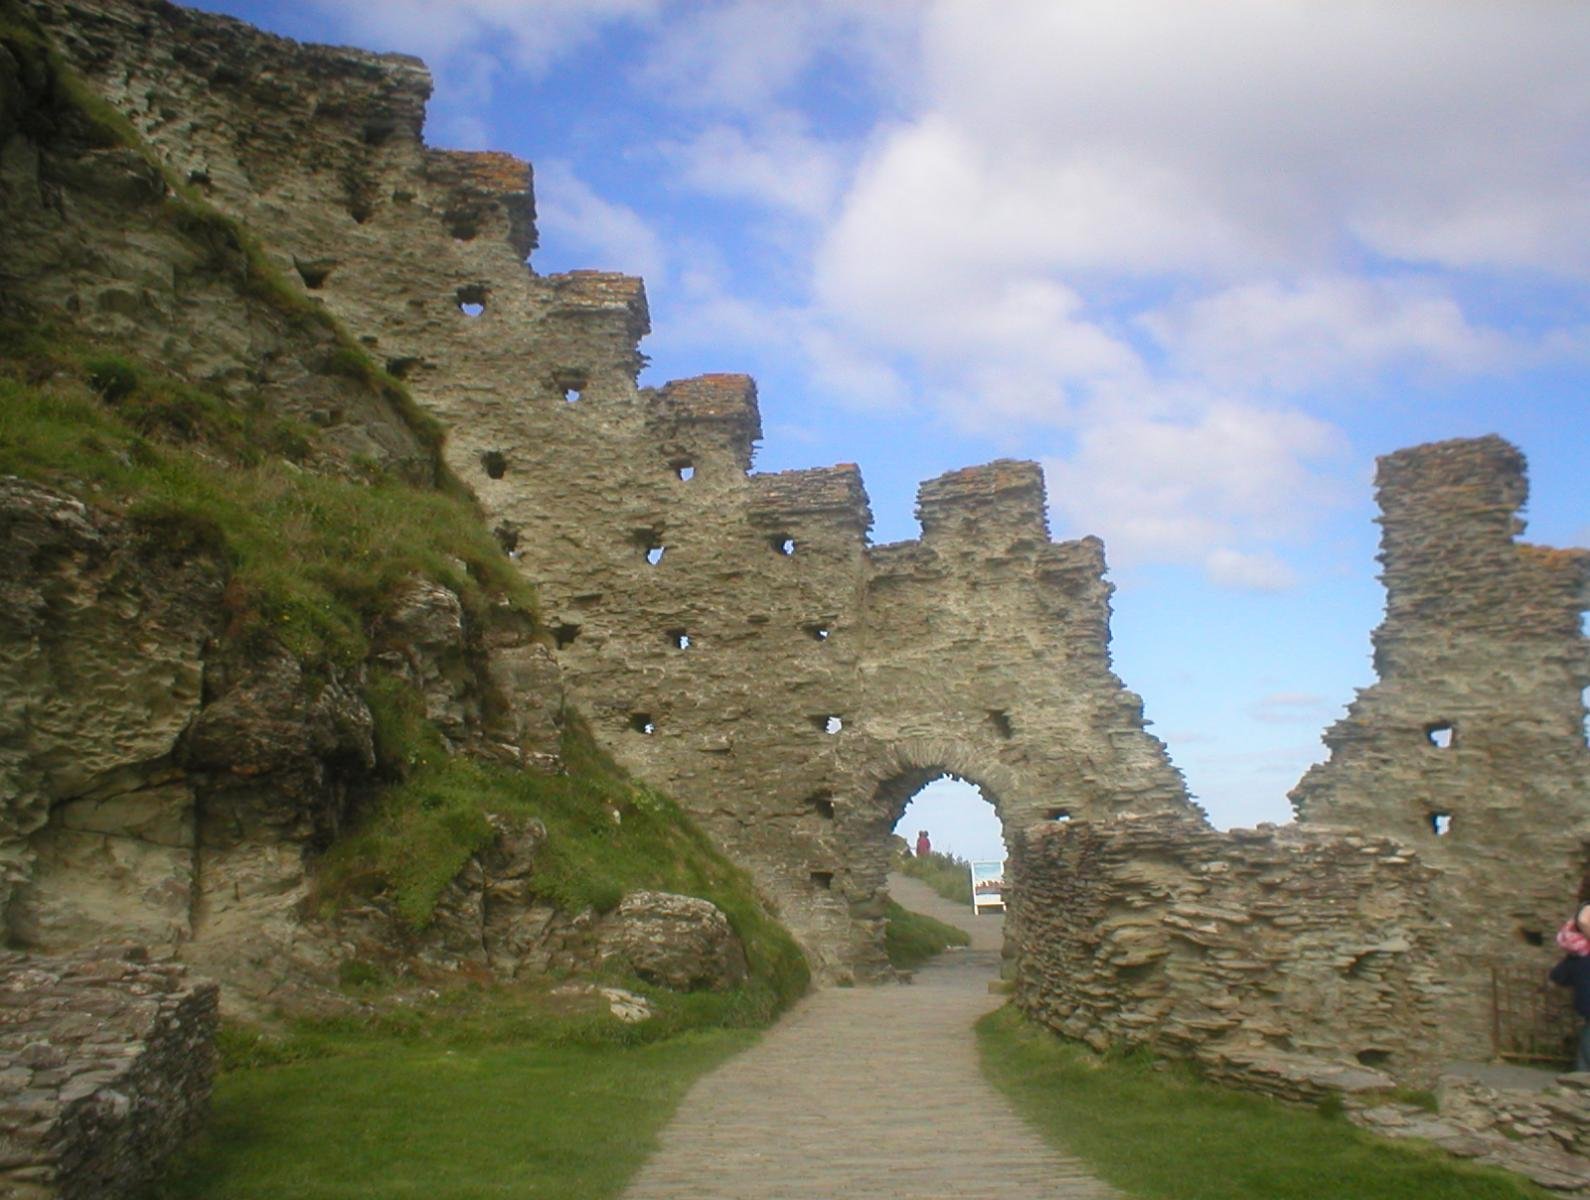 The castle gateway